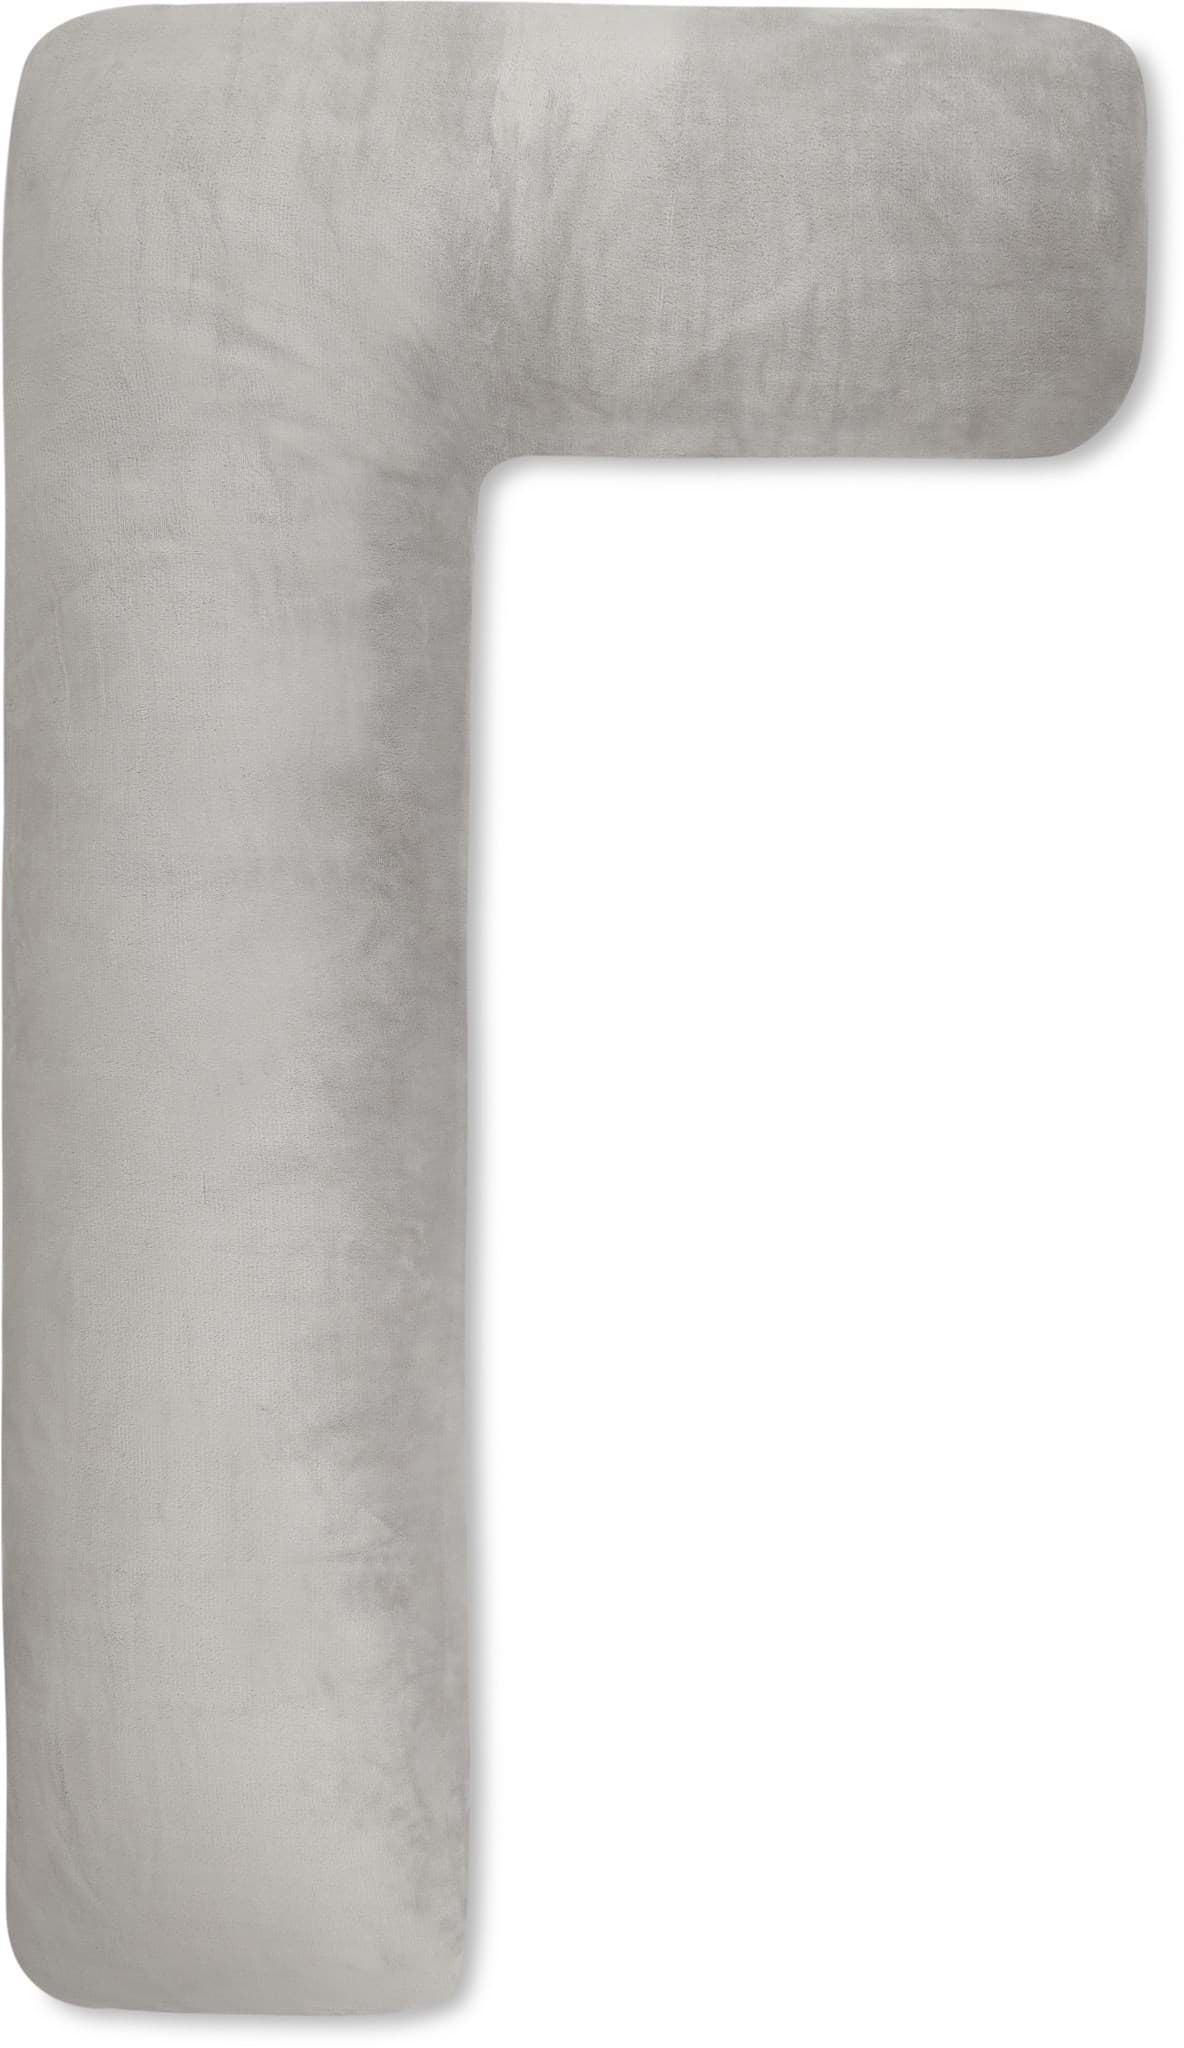 Bild von Körperkissen Seitenschläferkissen mit Flanellbezug Weiß